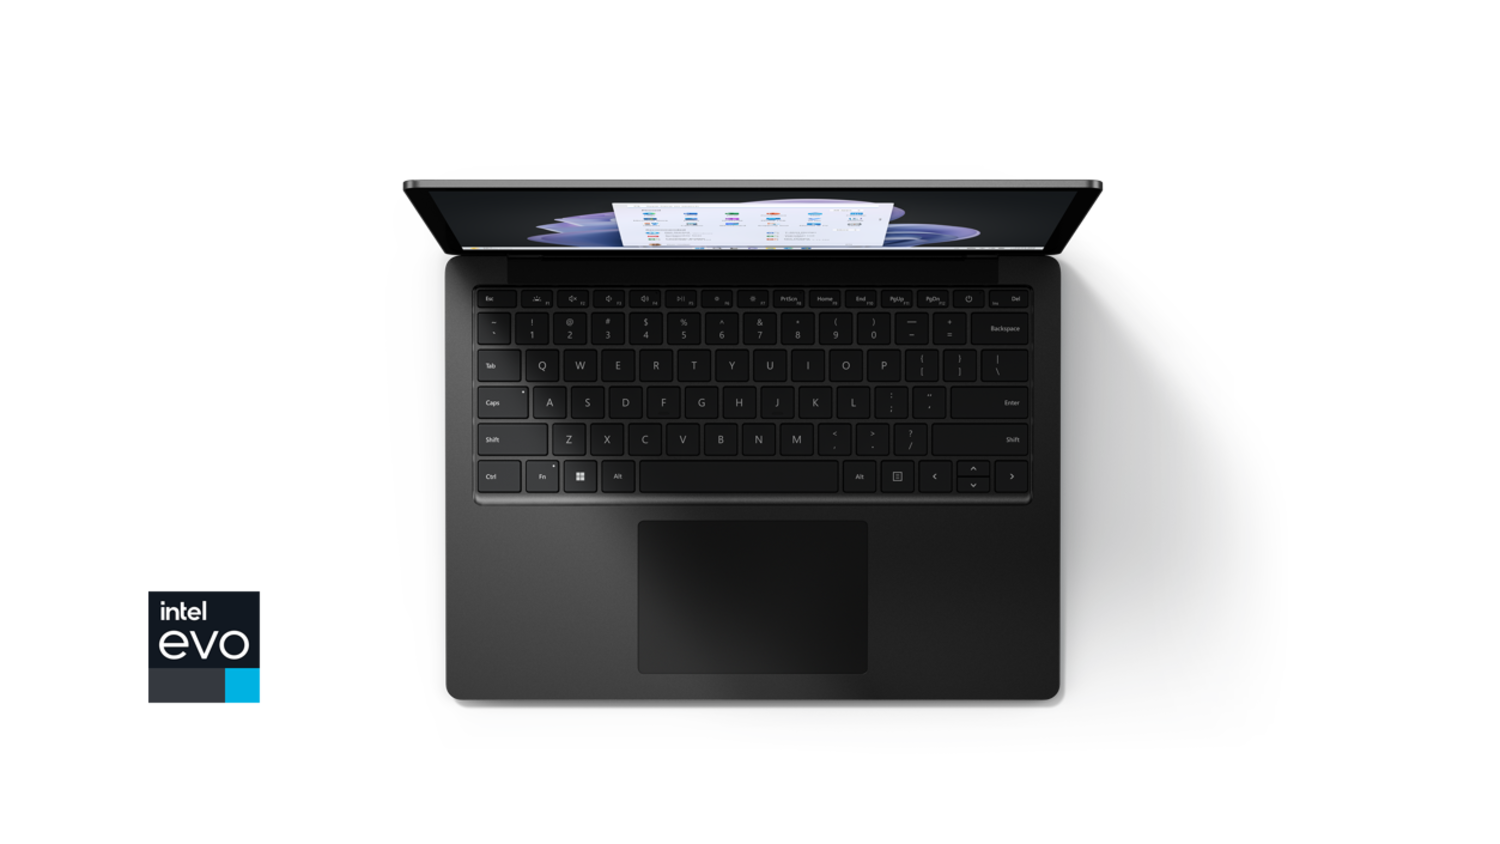 Microsoft Suface Laptop4 13.5インチ ブラック | www ...